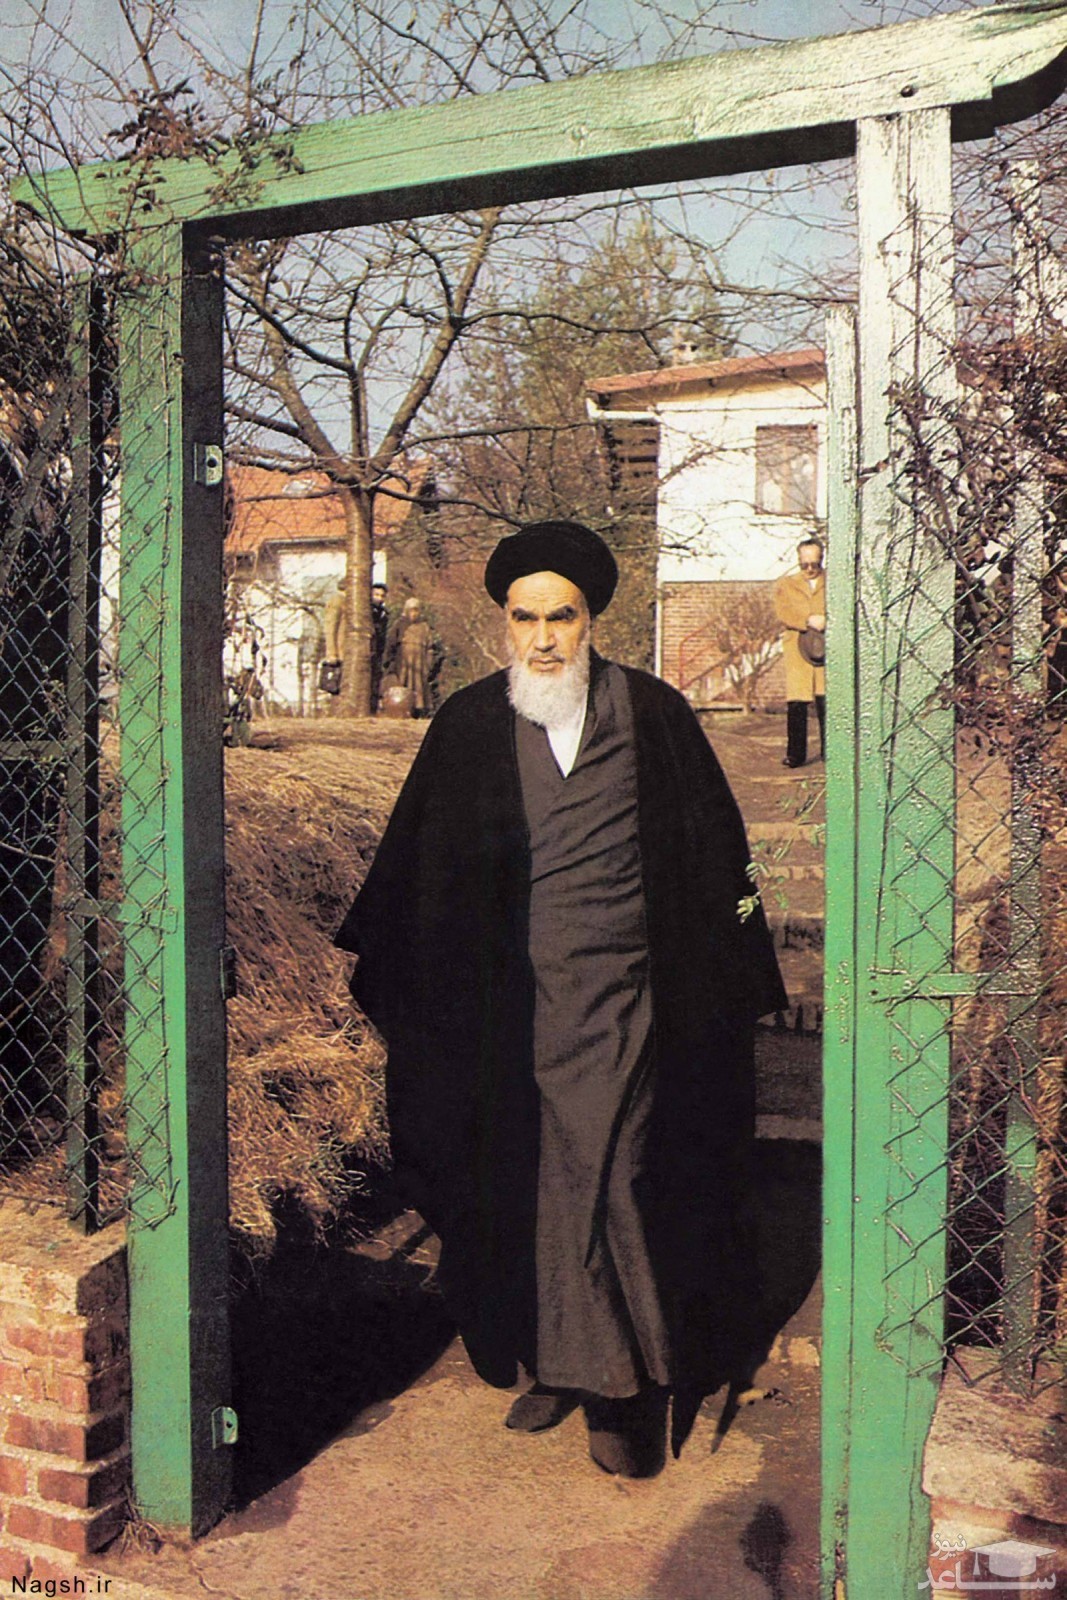 تصاویر زیرخاکی و دیده نشده از زندگی ساده امام خمینی (ره) در نوفل لوشاتو